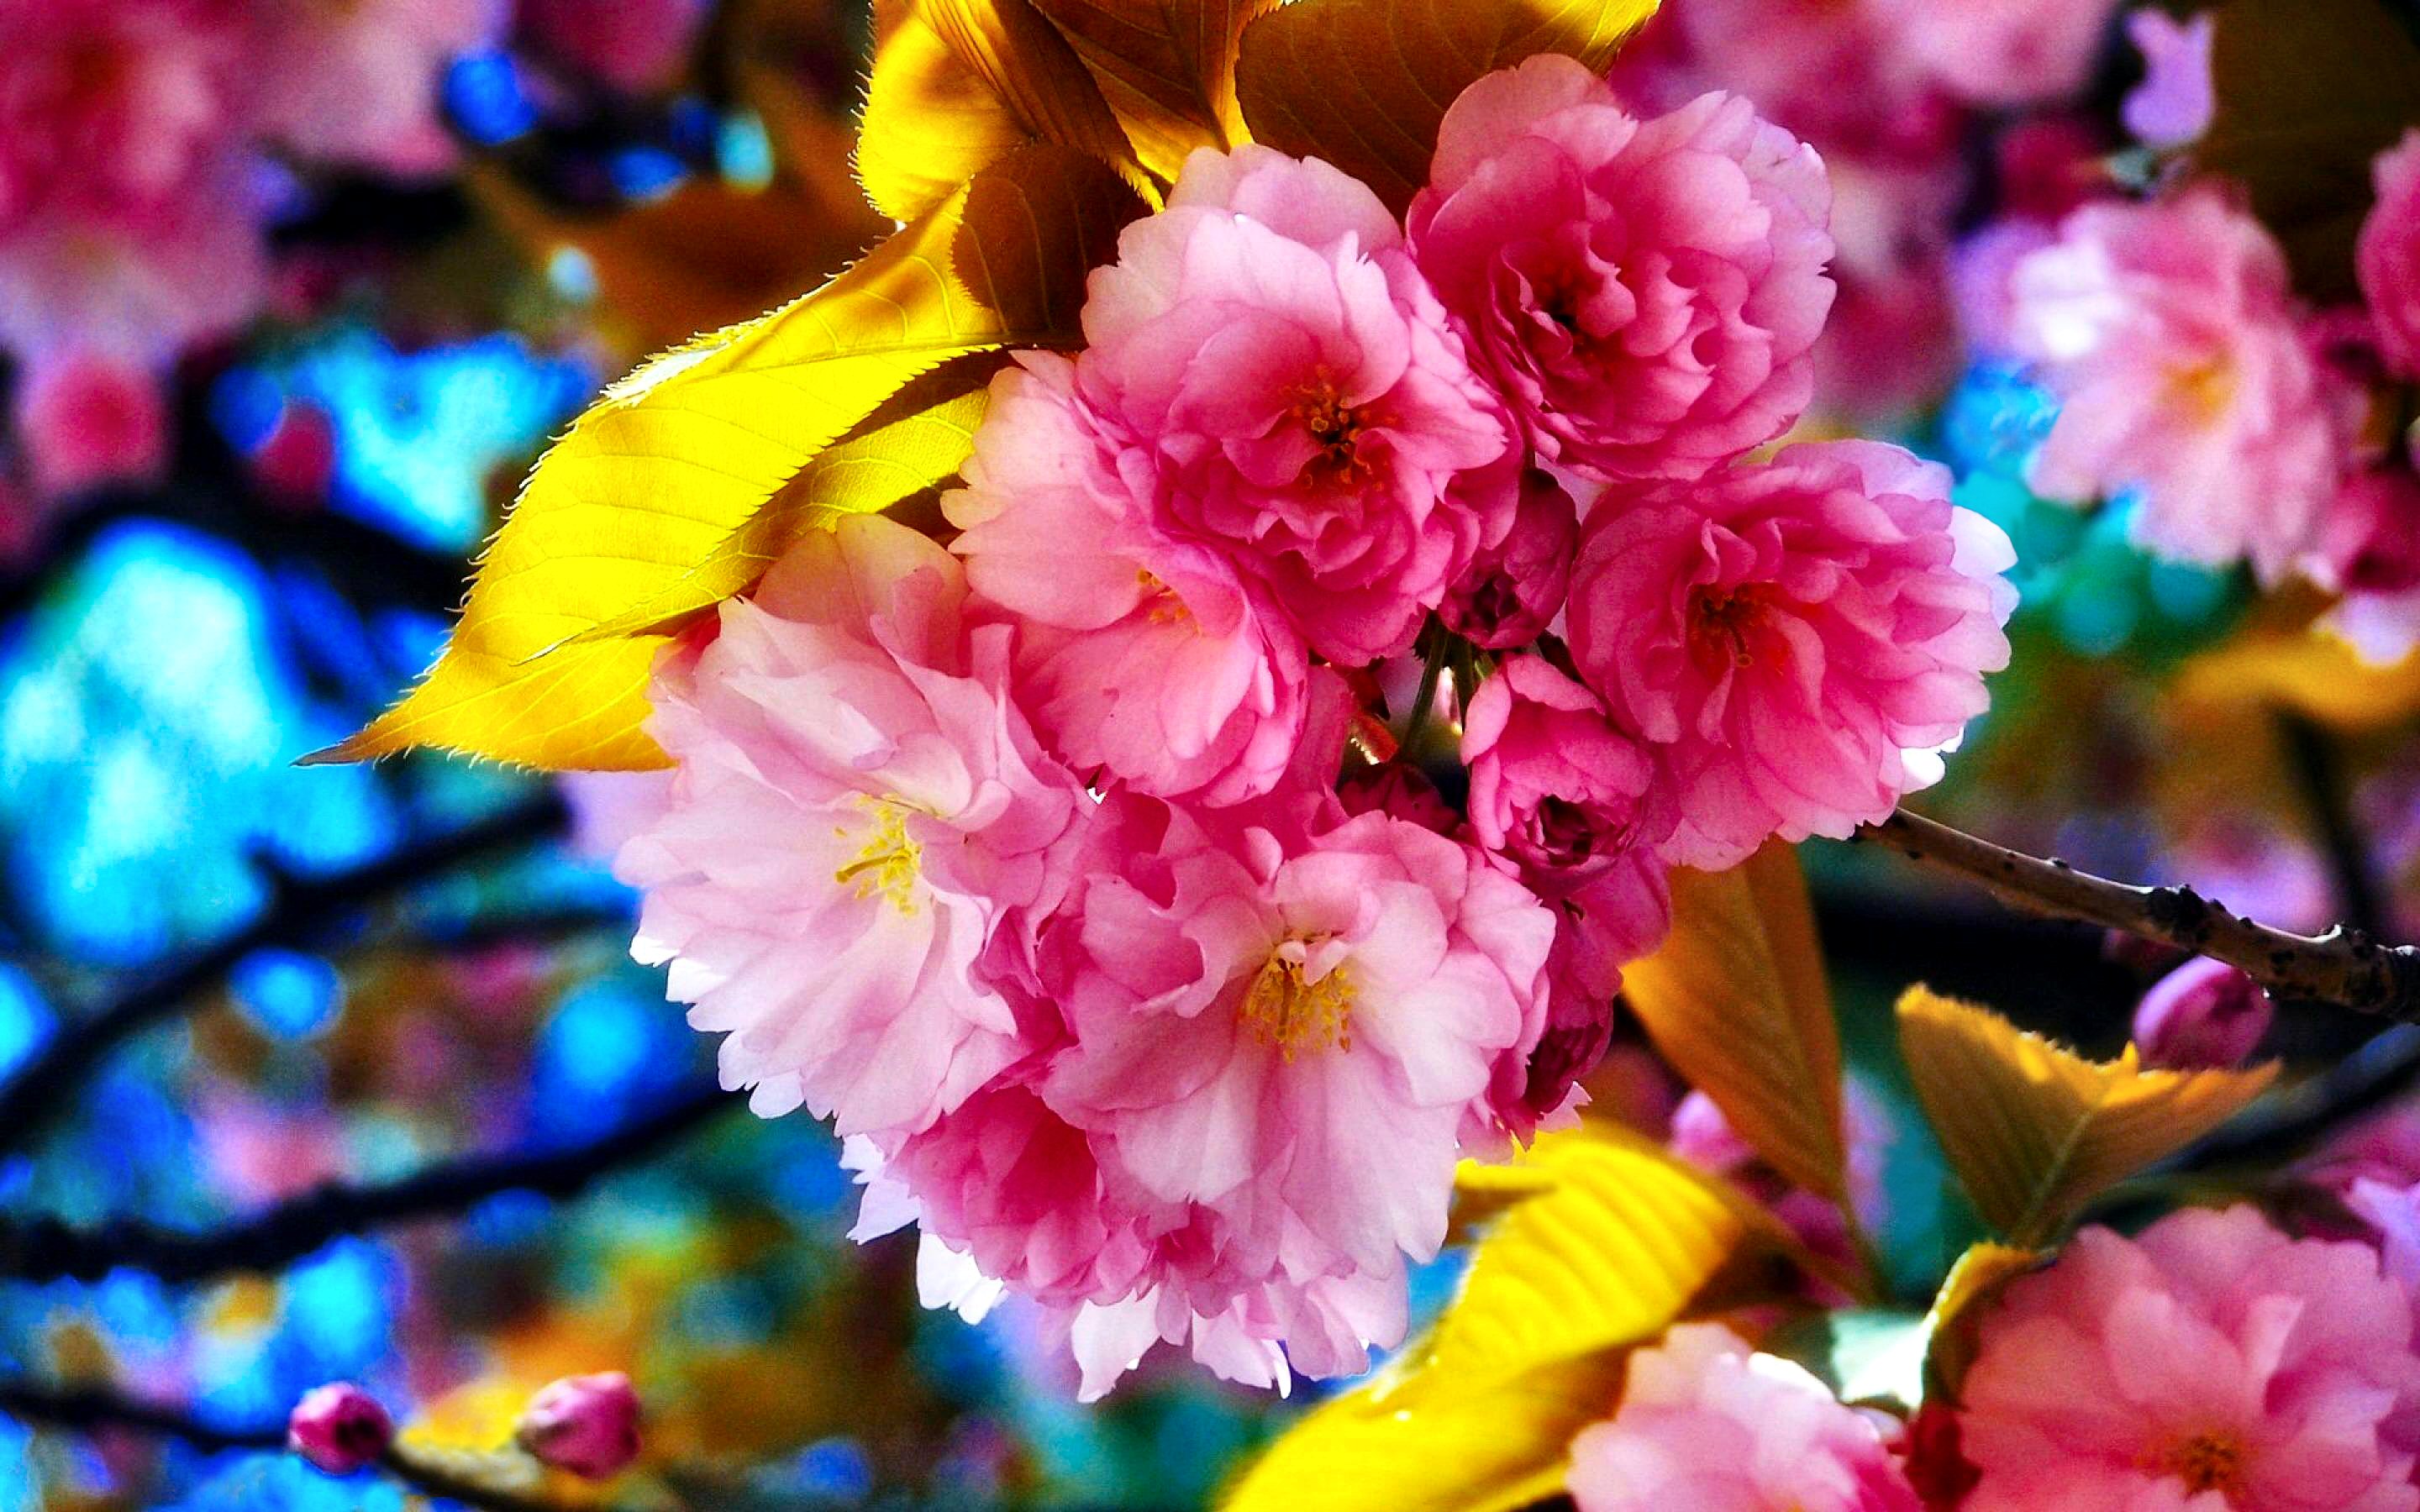 Фото на телефон на заставку цветы красивые